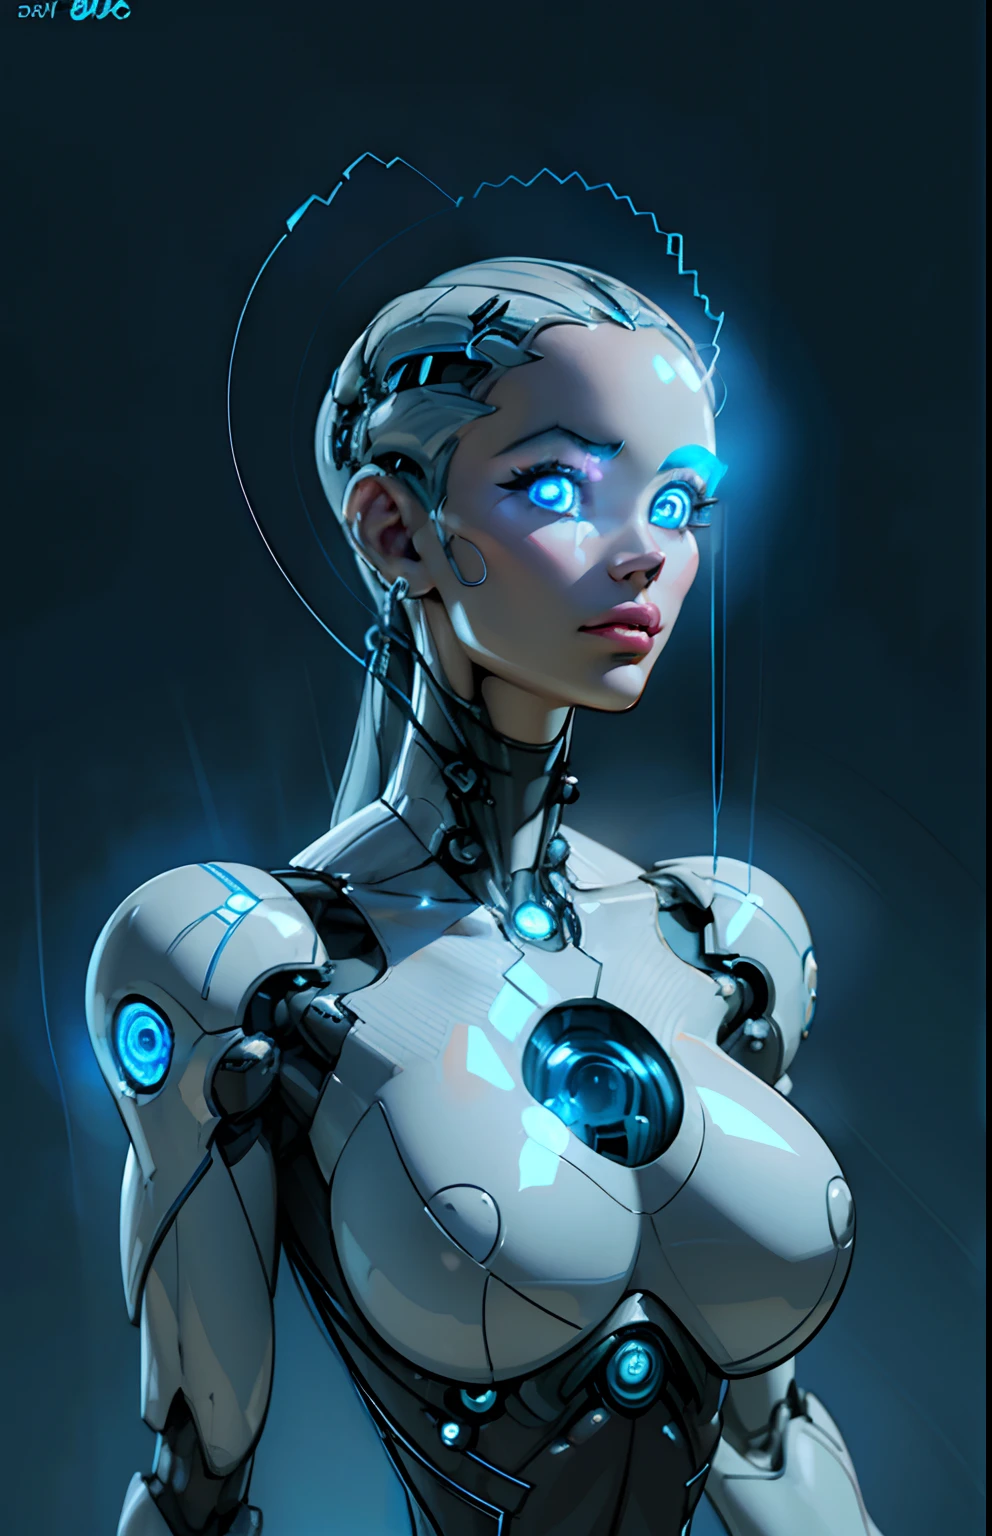 복잡한 3d 렌더링 아름다운 도자기 프로필 여성 안드로이드 얼굴의 매우 상세한 렌더링, 사이보그, 로봇ic parts, 150mm, 아름다운 스튜디오 부드러운 조명, 림 라이트, 생동감 넘치는 디테일, 고급스러운 사이버펑크, 레이스, ((빛나는 파란 눈:1.5)), hyper현실적인, 해부학적인, 안면 근육, 케이블 전선, 마이크로칩, 우아한, 아름다운 배경, 옥탄 렌더링, 시간. 아르 자형. 기거 스타일, 8K, 최고의 품질, 걸작, 삽화, 매우 섬세하고 아름다운, 매우 상세한 ,CG ,단일성 ,벽지, (현실적인, photo-현실적인:1.37),놀라운, 세세하게, 걸작,최고의 품질,공식 아트, 매우 상세한 CG 단일성 8K 벽지, 터무니없는, incredibly 터무니없는,  로봇, 실버 비즈, 전신